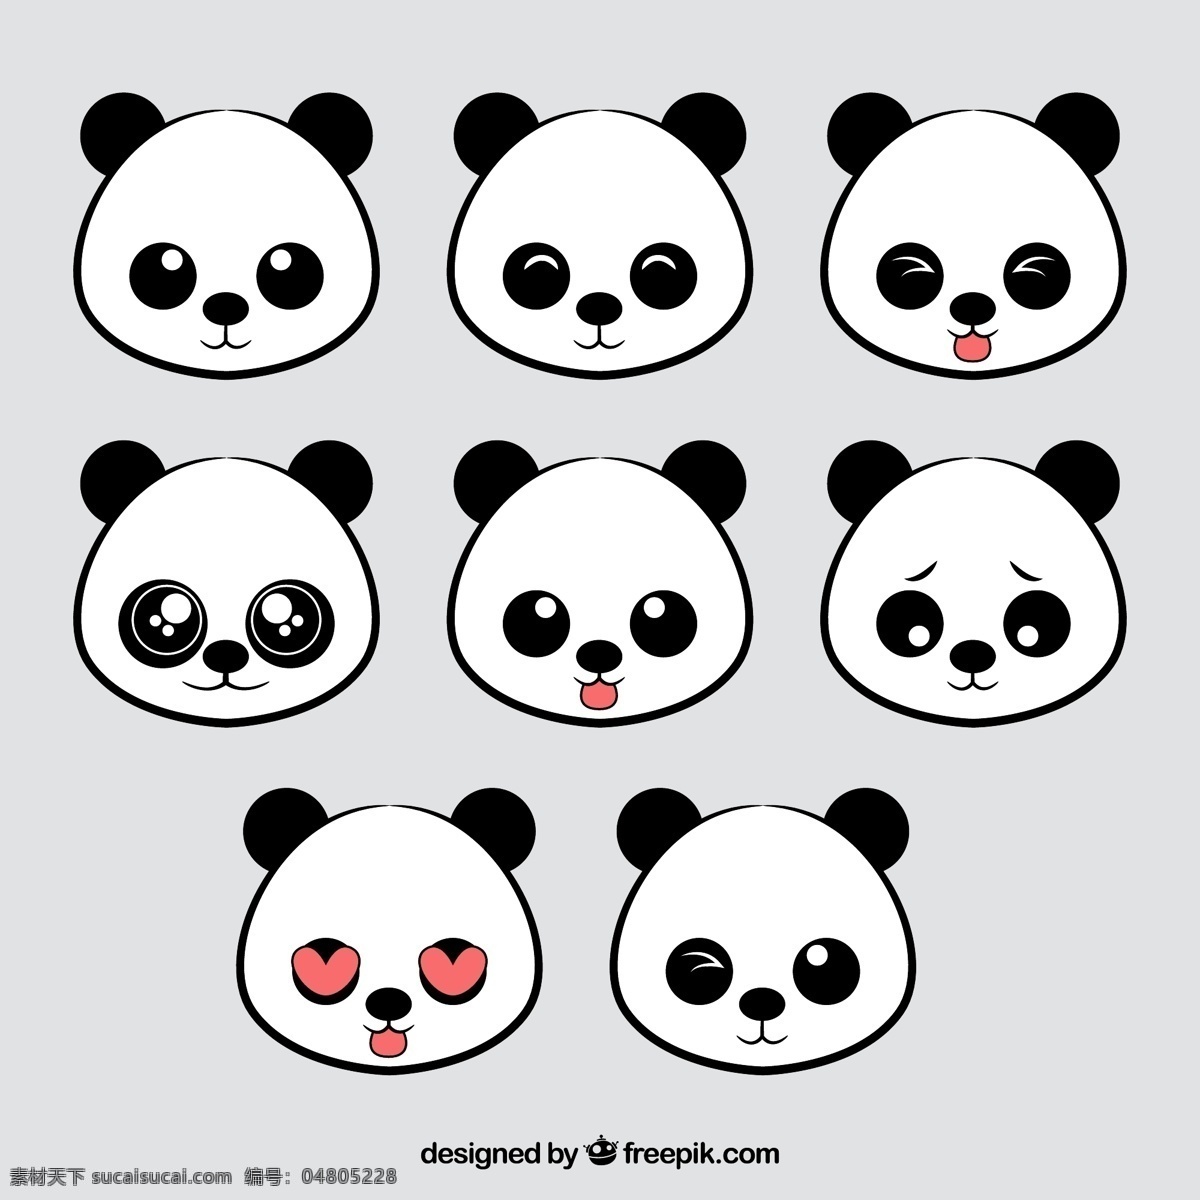 矢量 卡通 熊猫 元素 装饰 表情 包 图案 集合 矢量熊猫 卡通熊猫 熊猫元素 熊猫装饰 熊猫图案 可爱熊猫 扁平化 彩色 表情包 描边